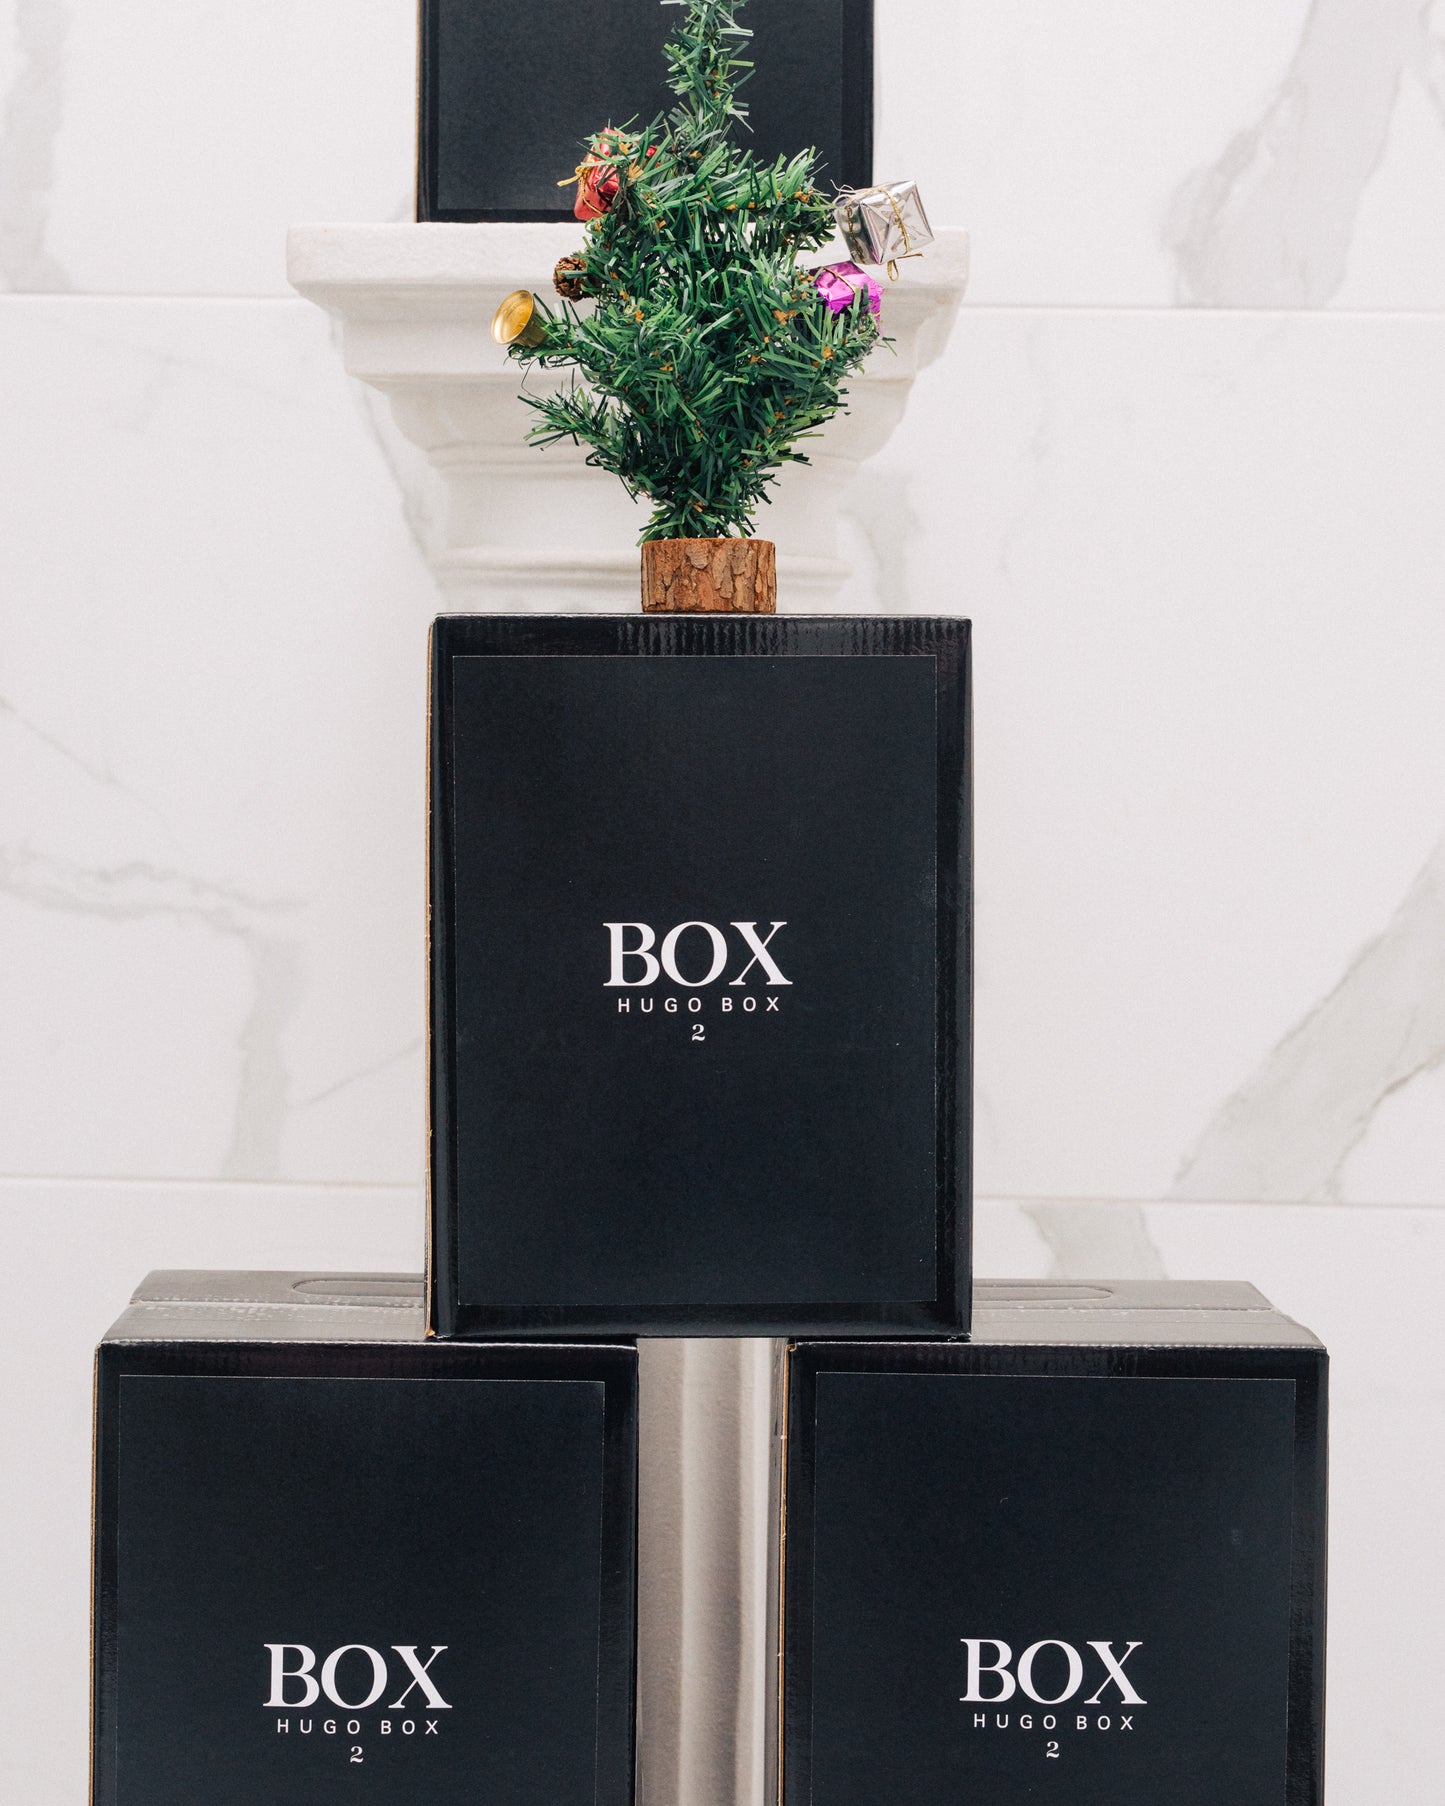 HUGO BOX II (Vinho Tinto em BOX)